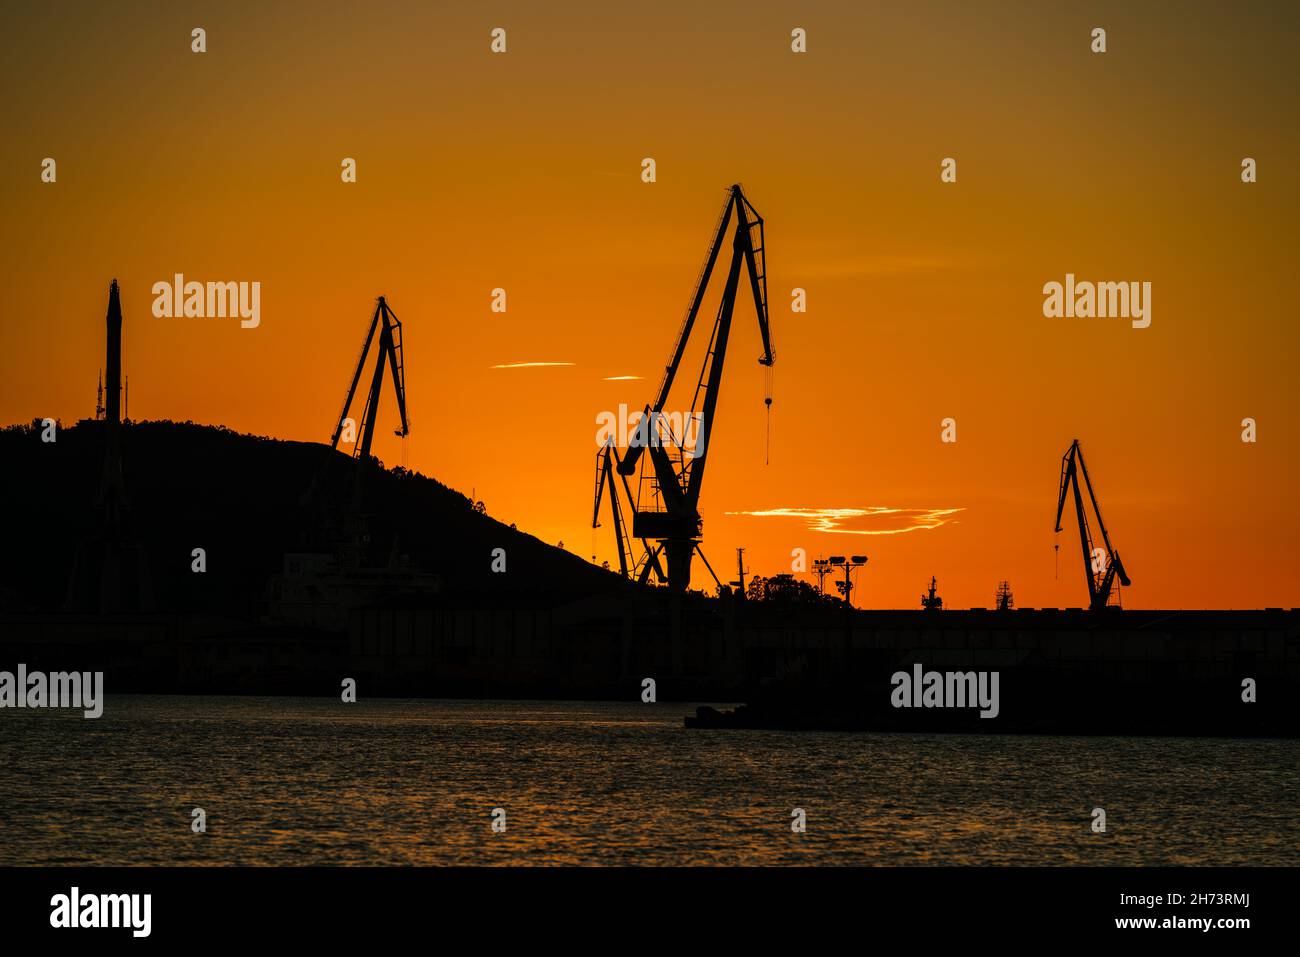 Grúas de los astilleros portuarios contra el cielo naranja Foto de stock